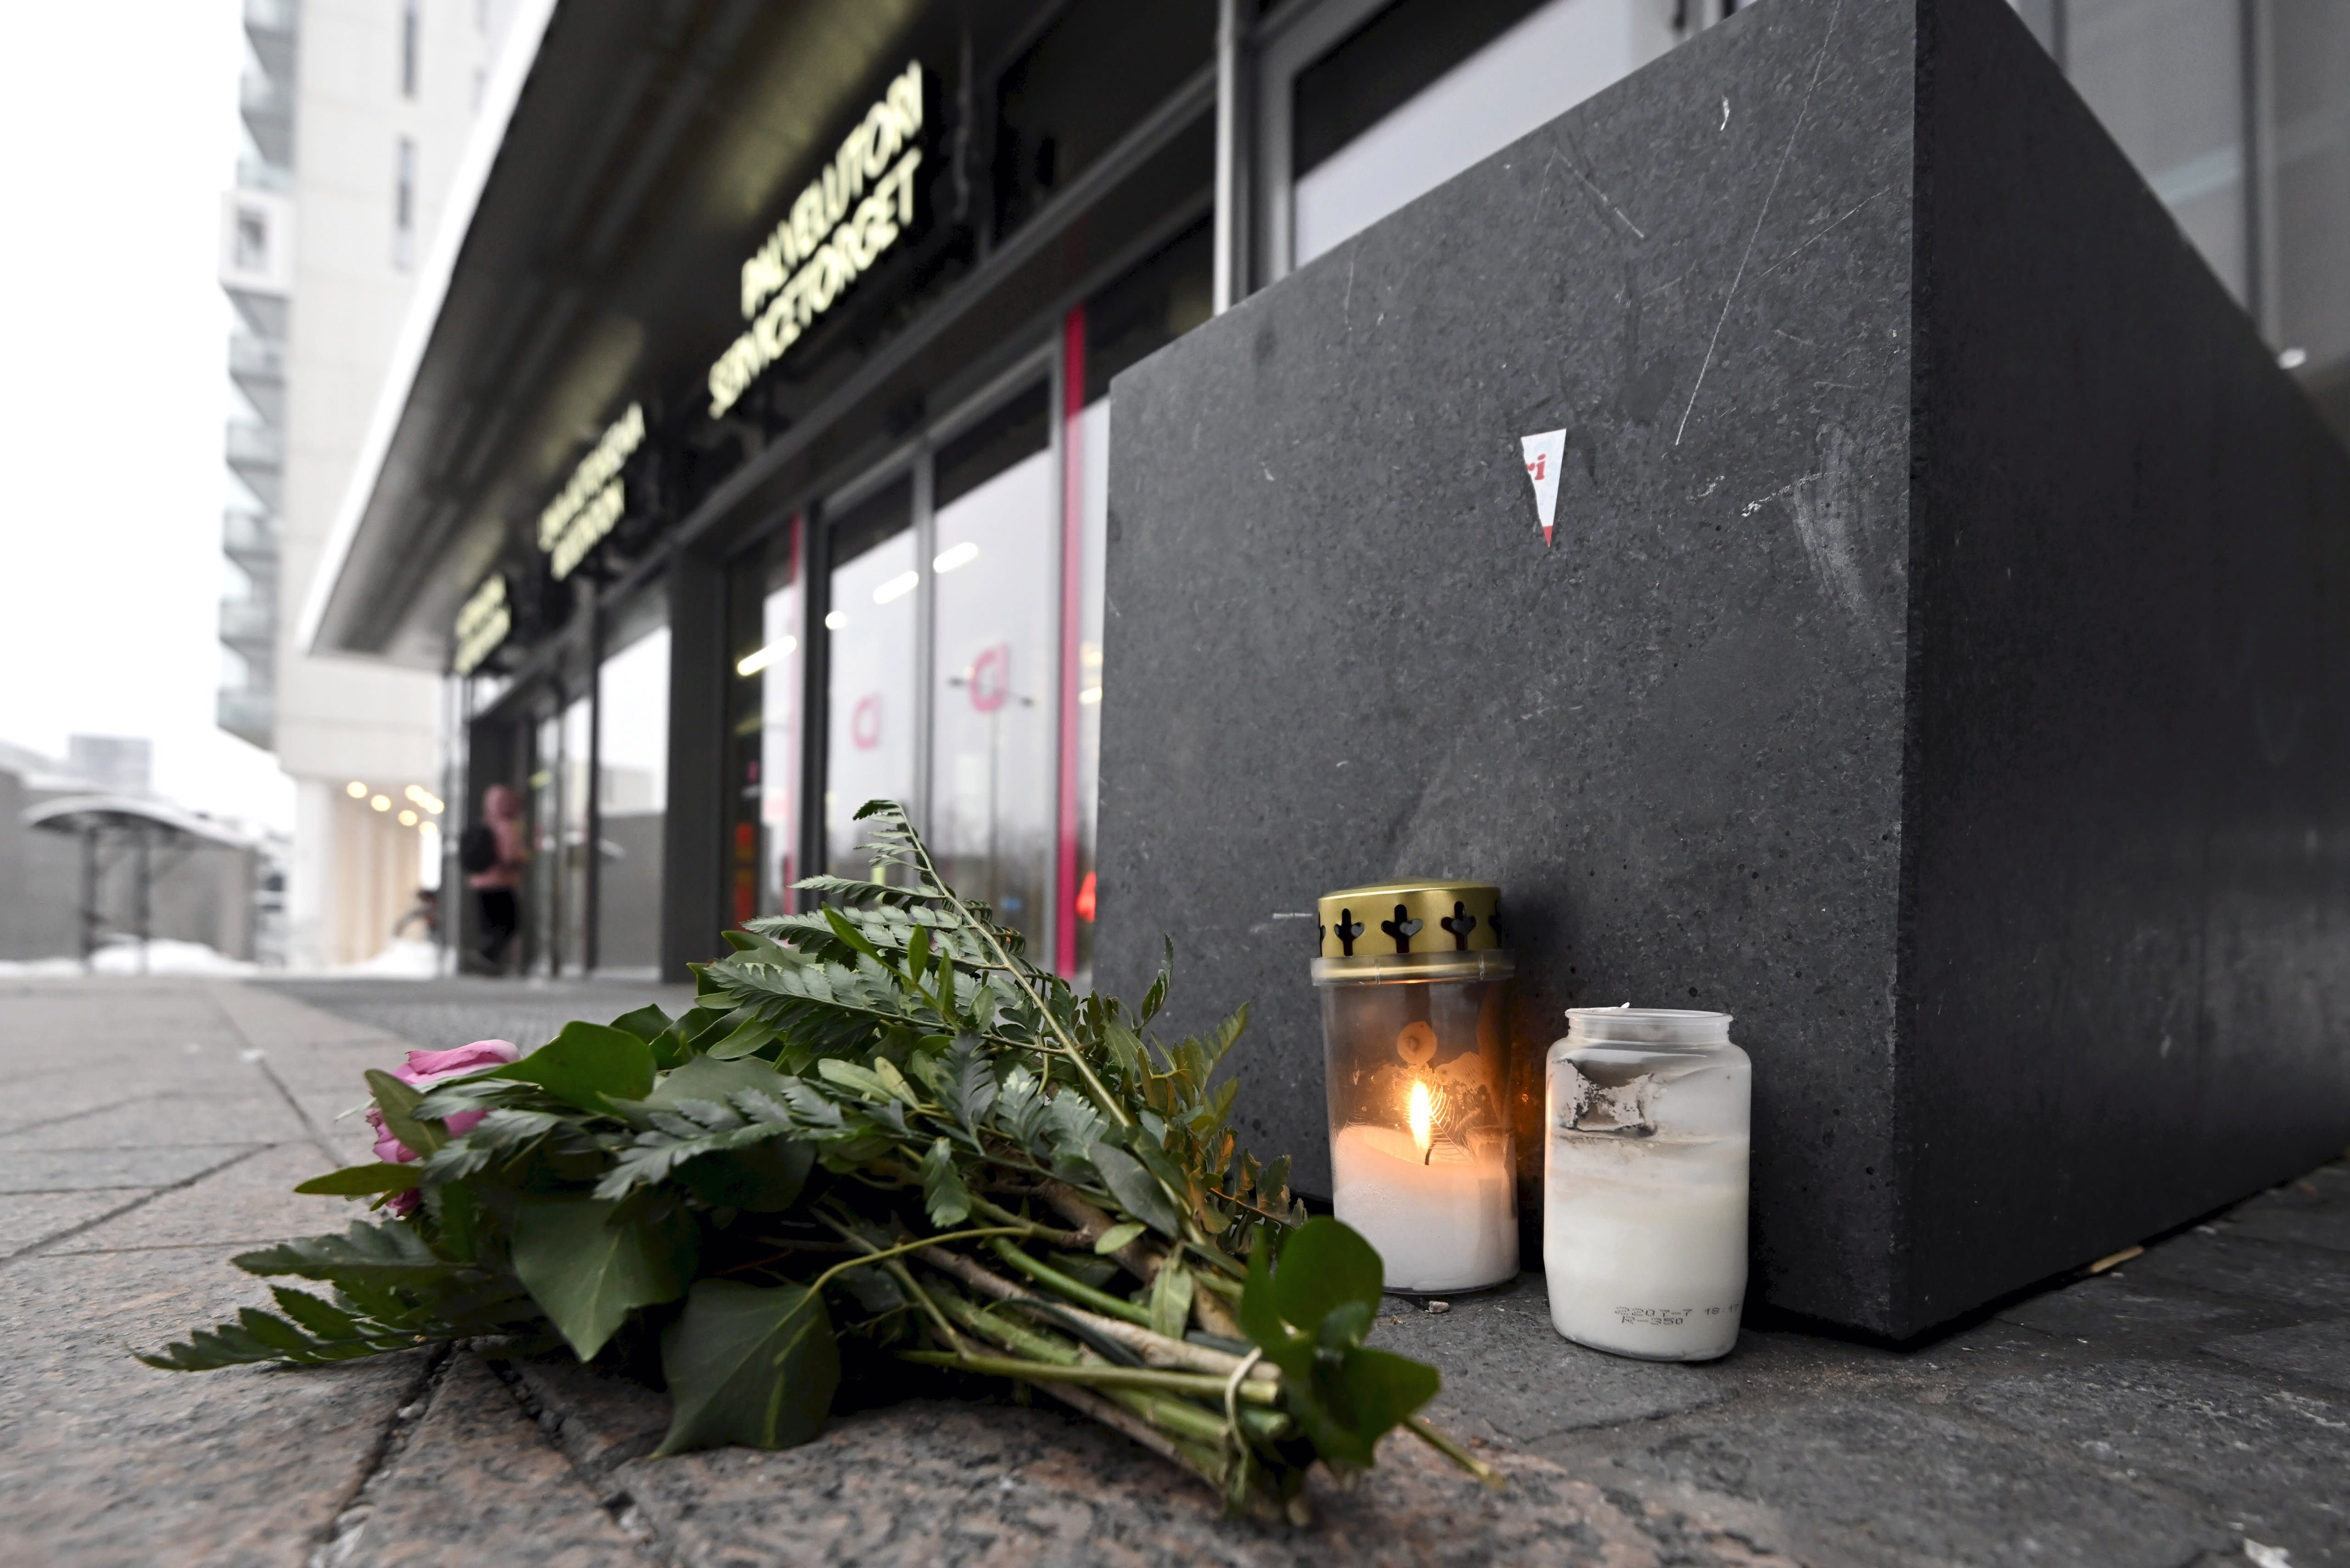 Im Einkaufszentrum von Espoo ist eine Frau gestorben, die Sicherheitskräfte stehen unter Mordverdacht